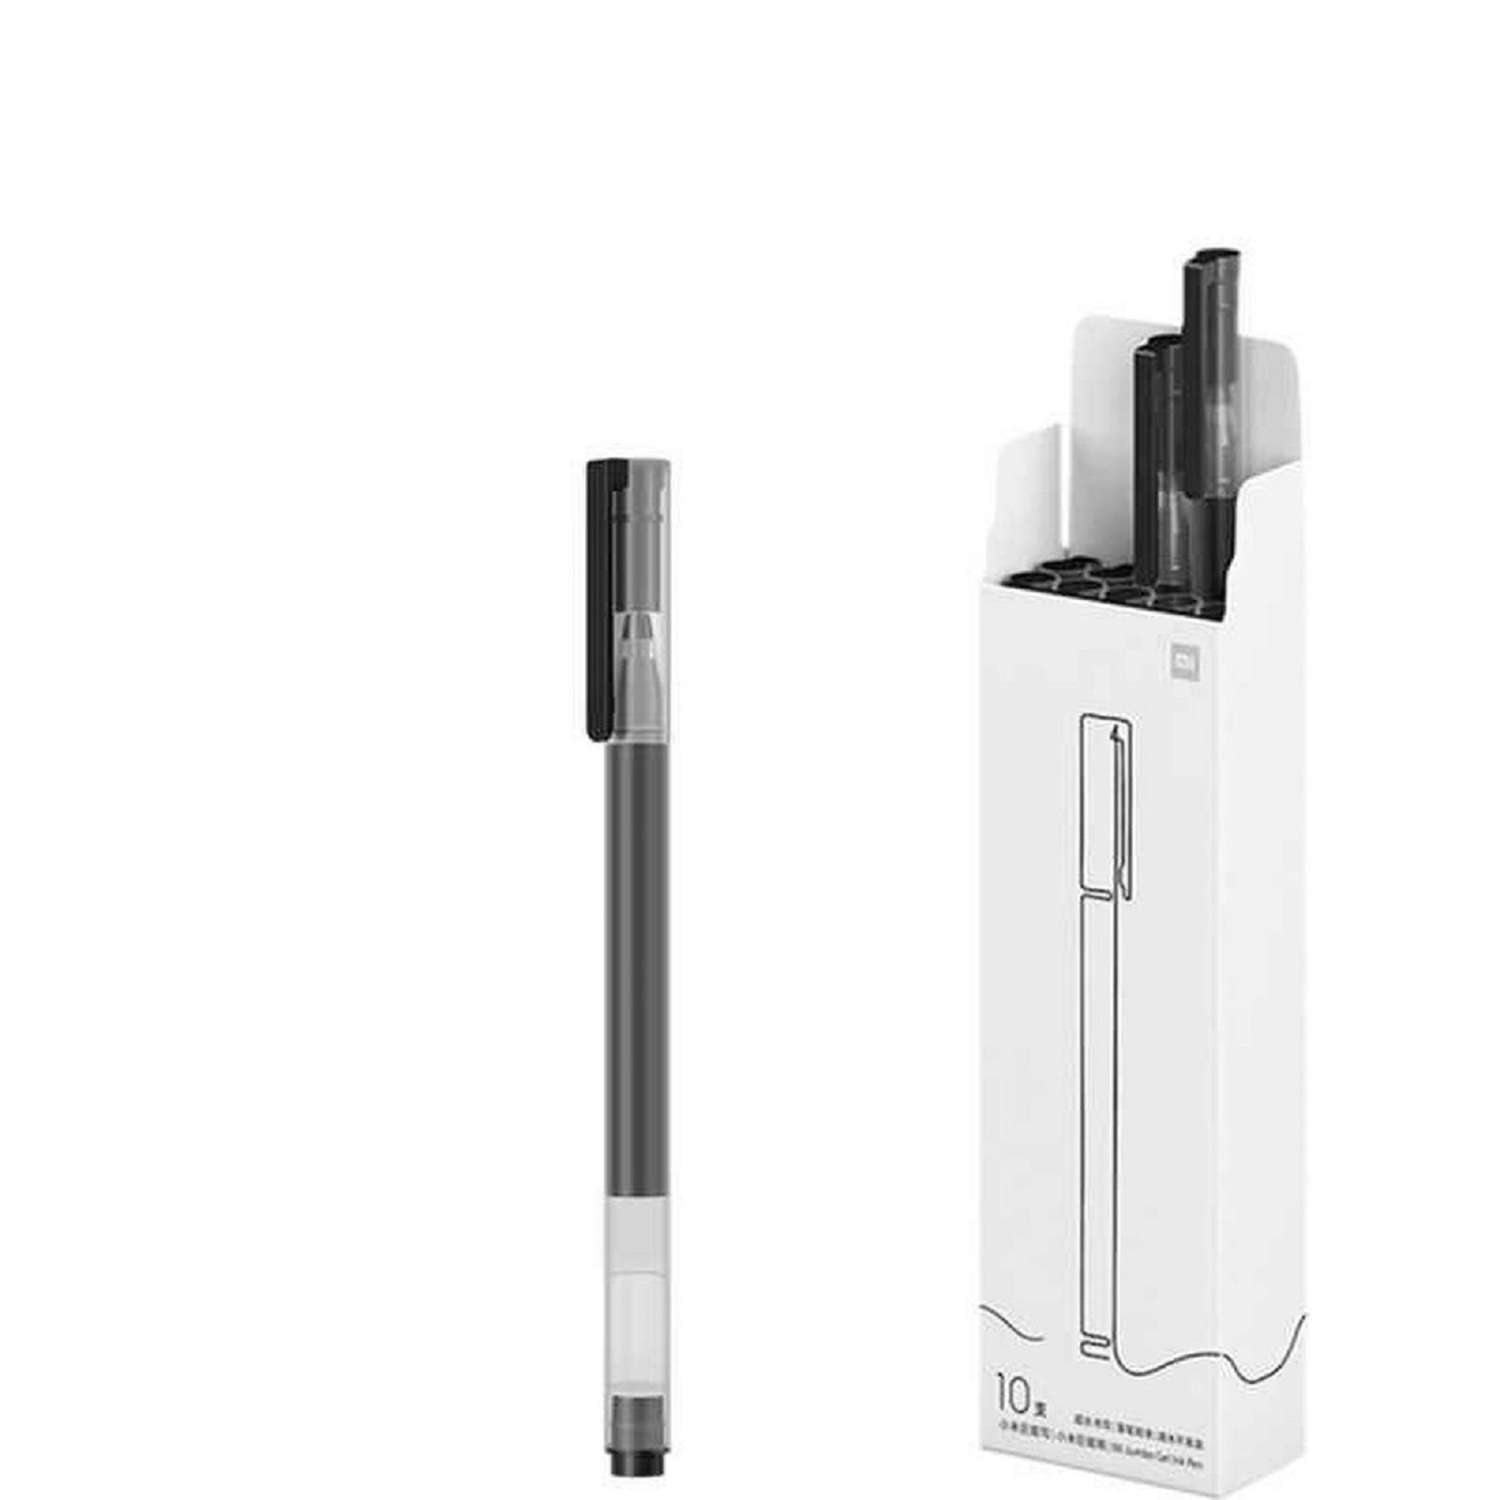 Ручка XIAOMI Mi High-capacity Gel Pen гелевая набор 10 шт - фото 3